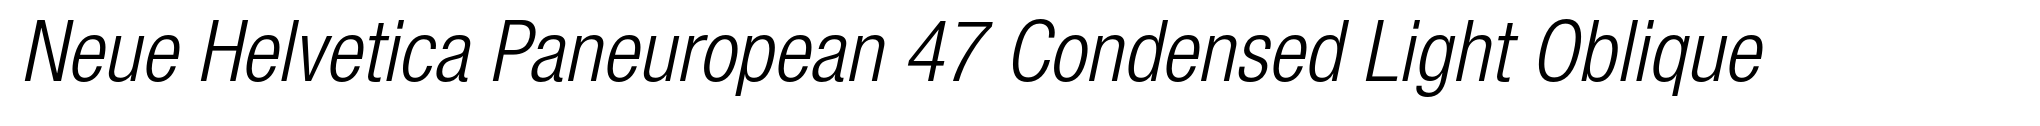 Neue Helvetica Paneuropean 47 Condensed Light Oblique image